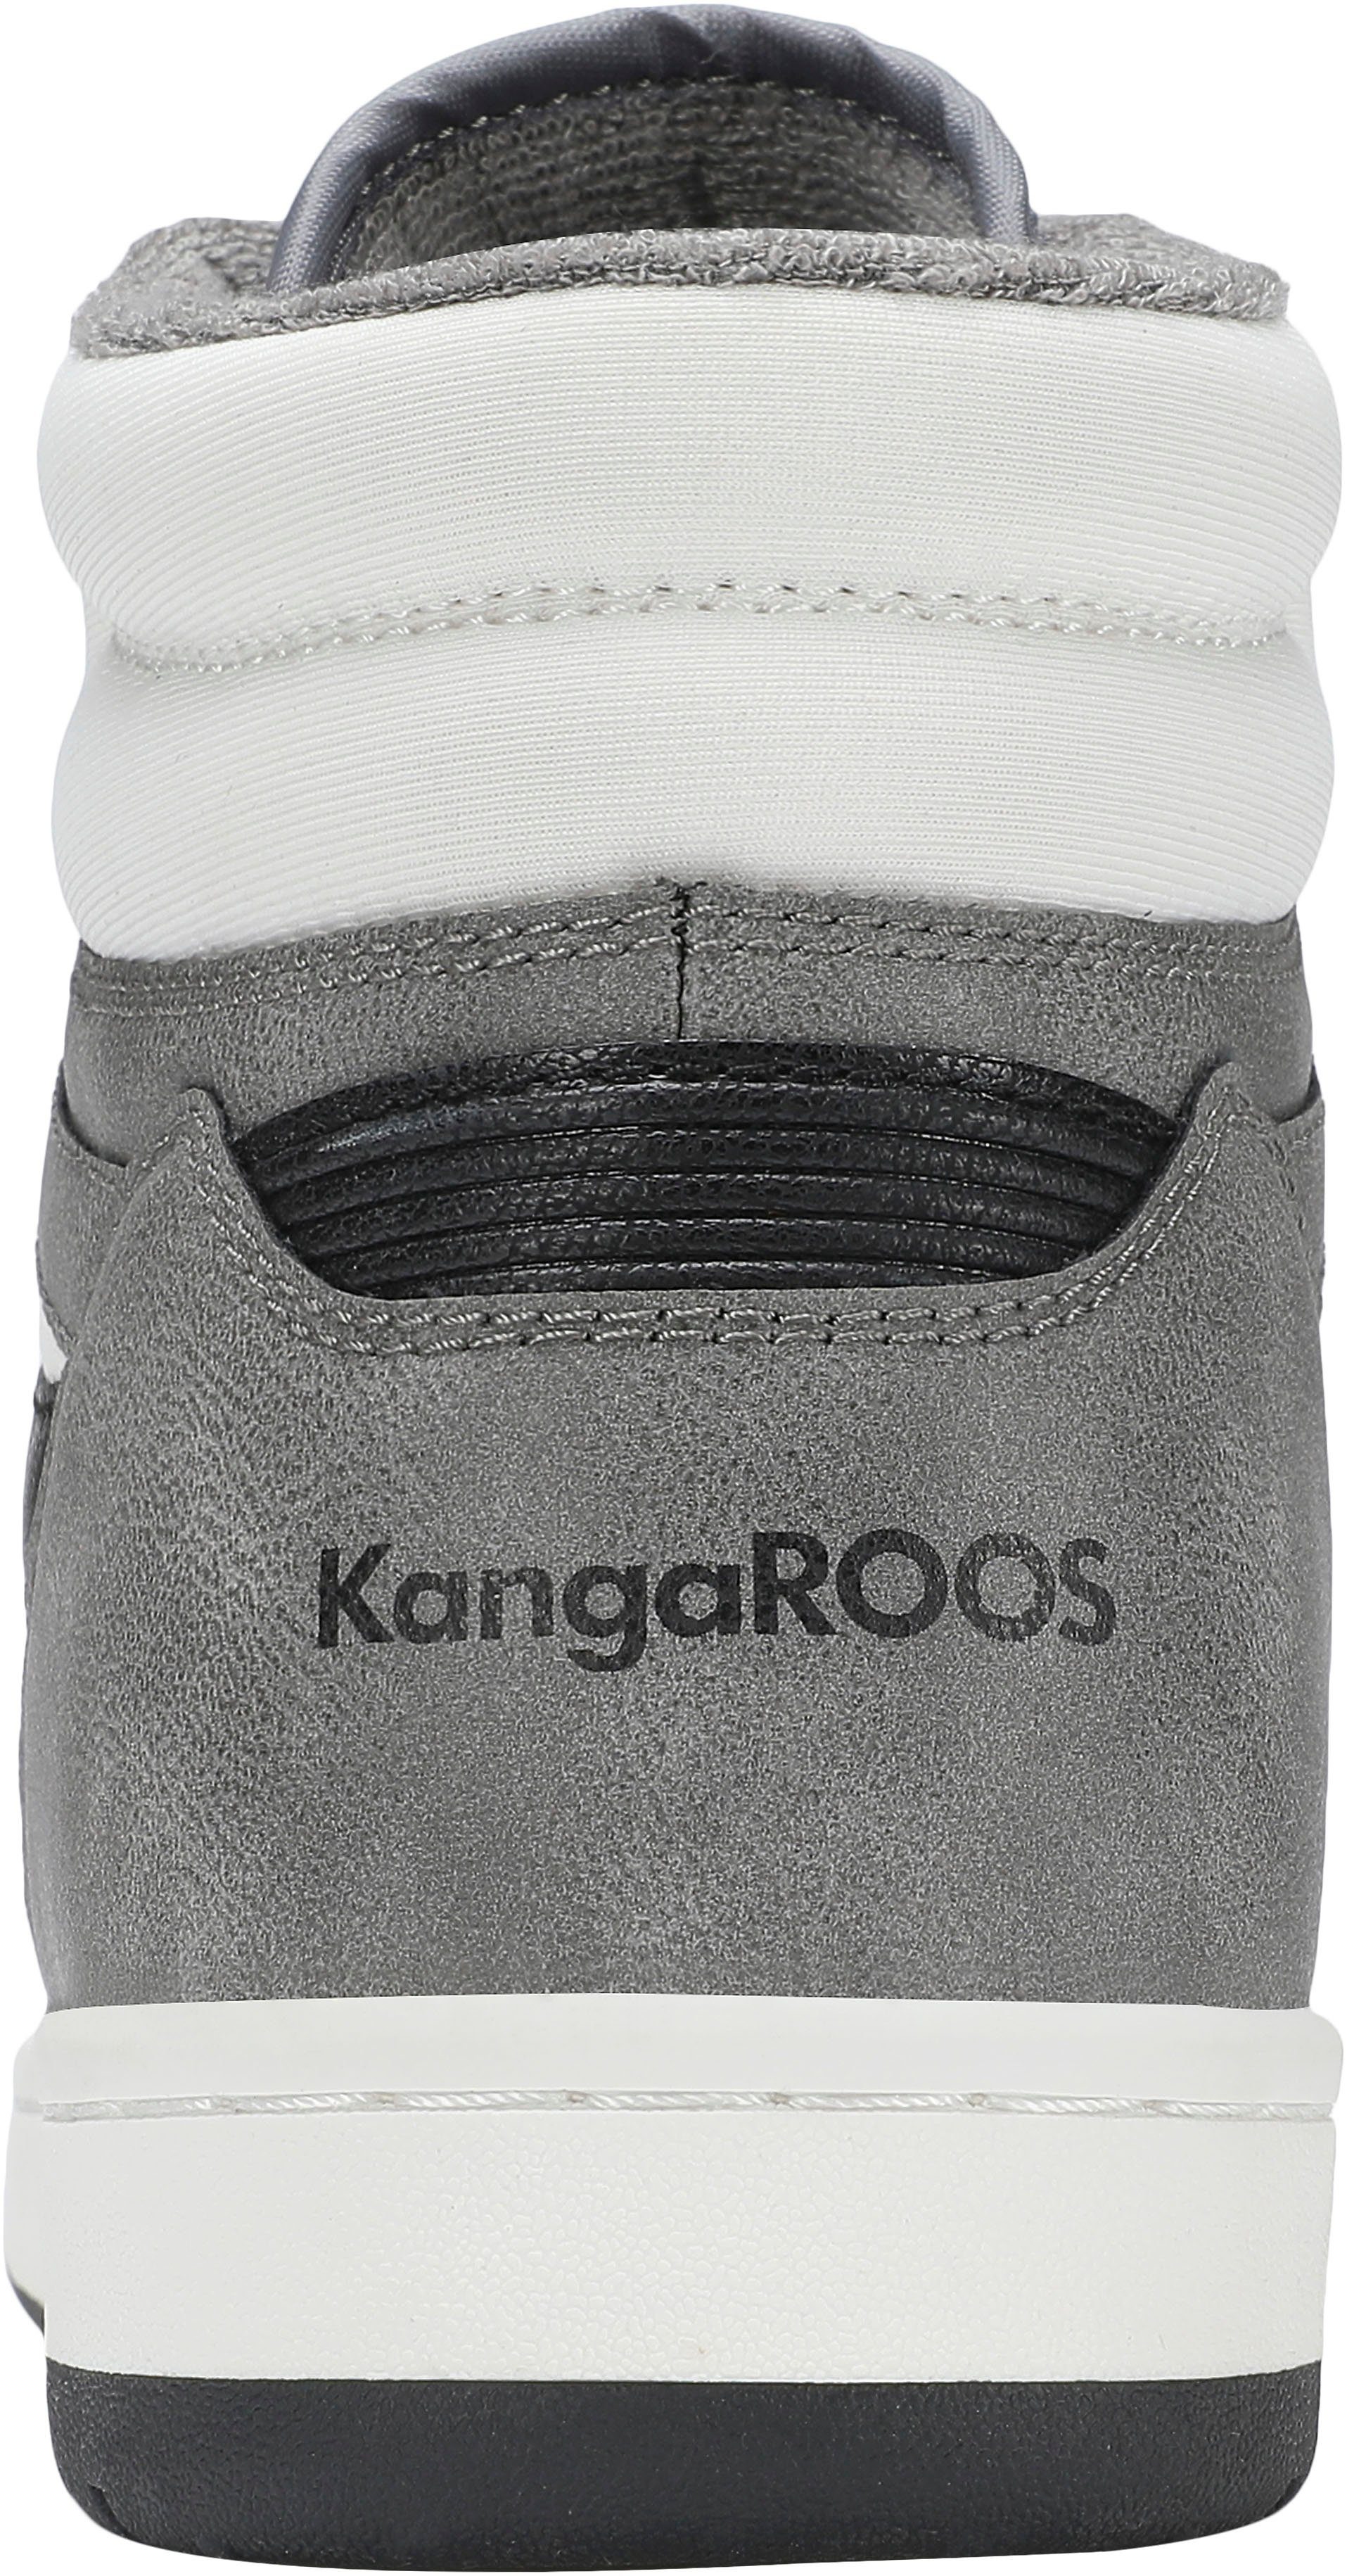 Sneaker KangaROOS K-Slam Mid grau-schwarz Point